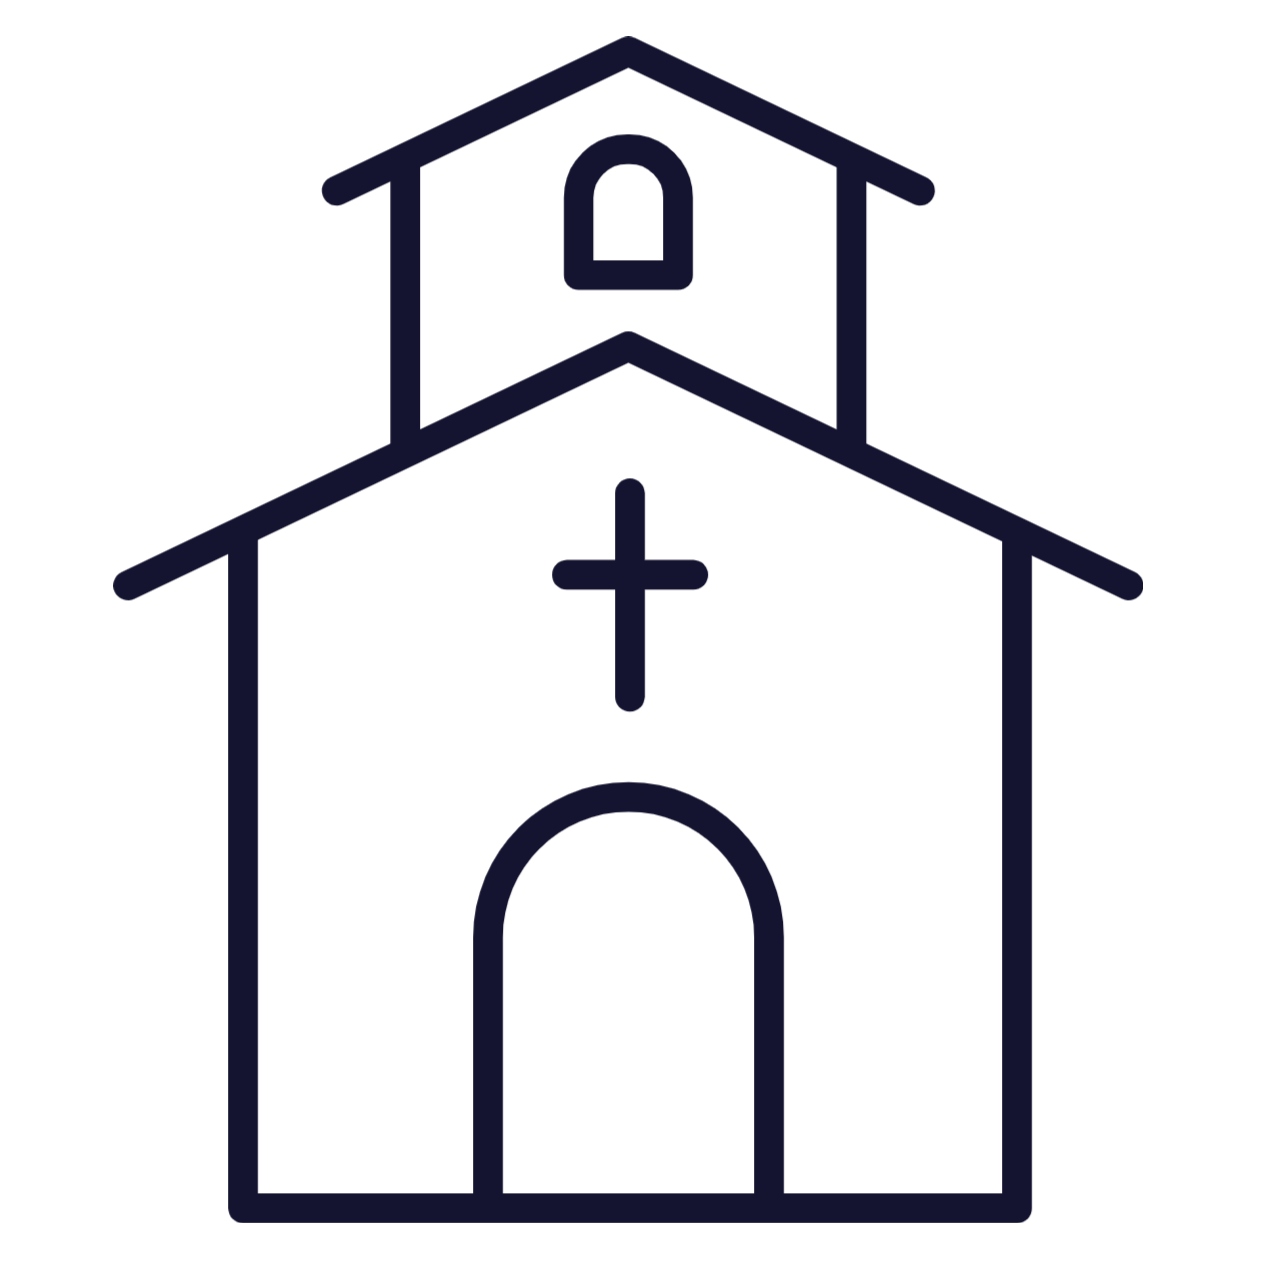 3. Churches or House Churches